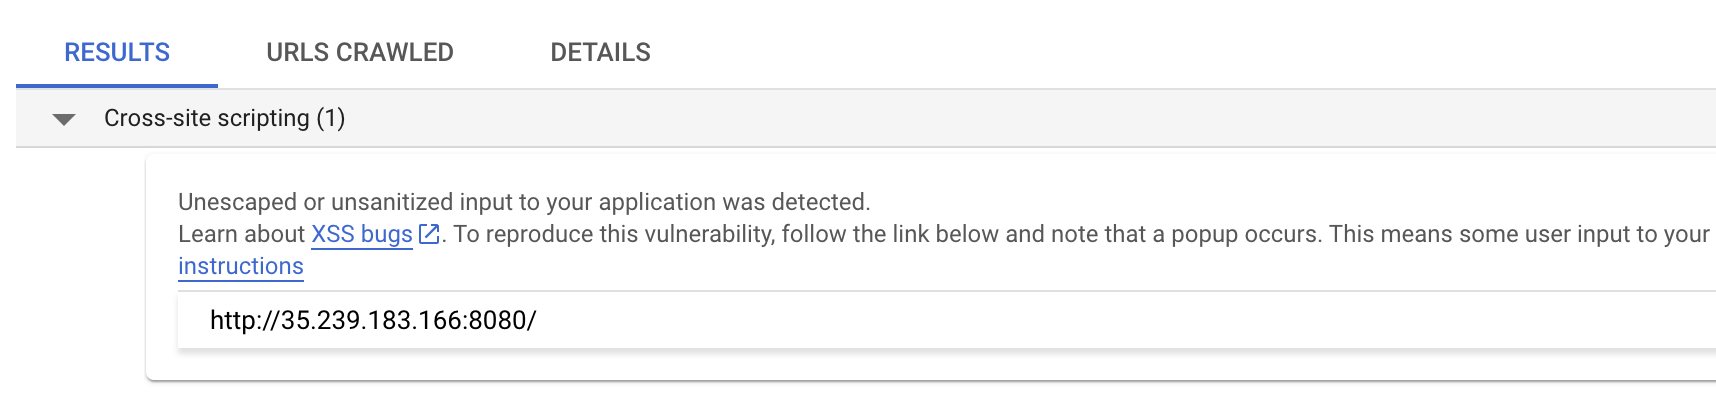 Resultados do Web Security Scanner com vulnerabilidades